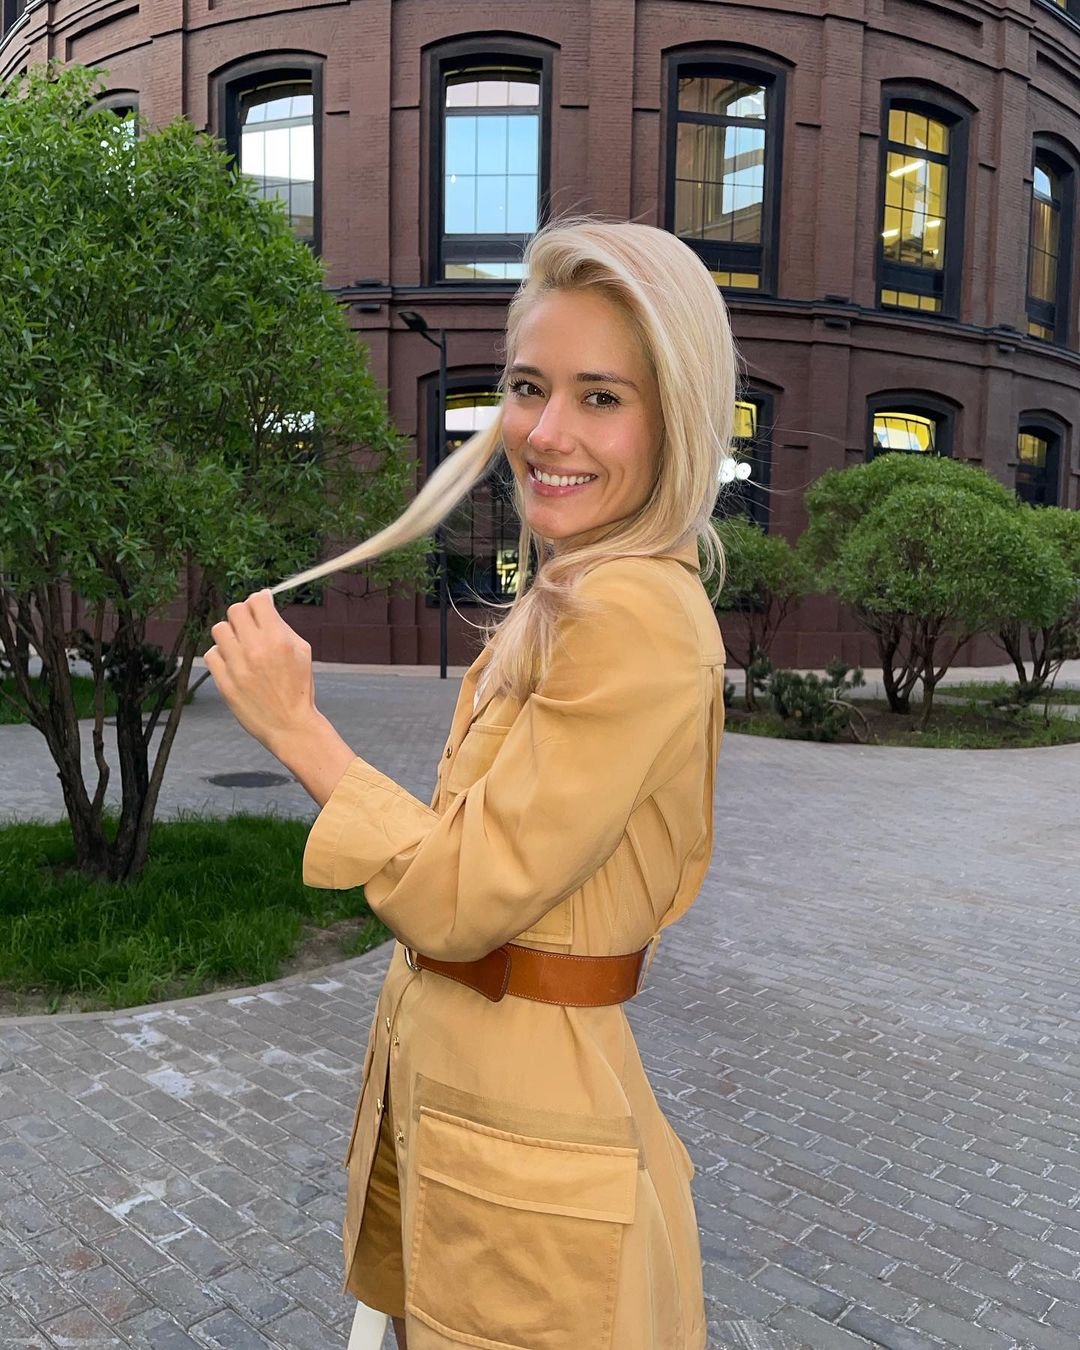 Юлия Паршута в горчичном комплекте-"двойке" прогулялась по улицам столицы